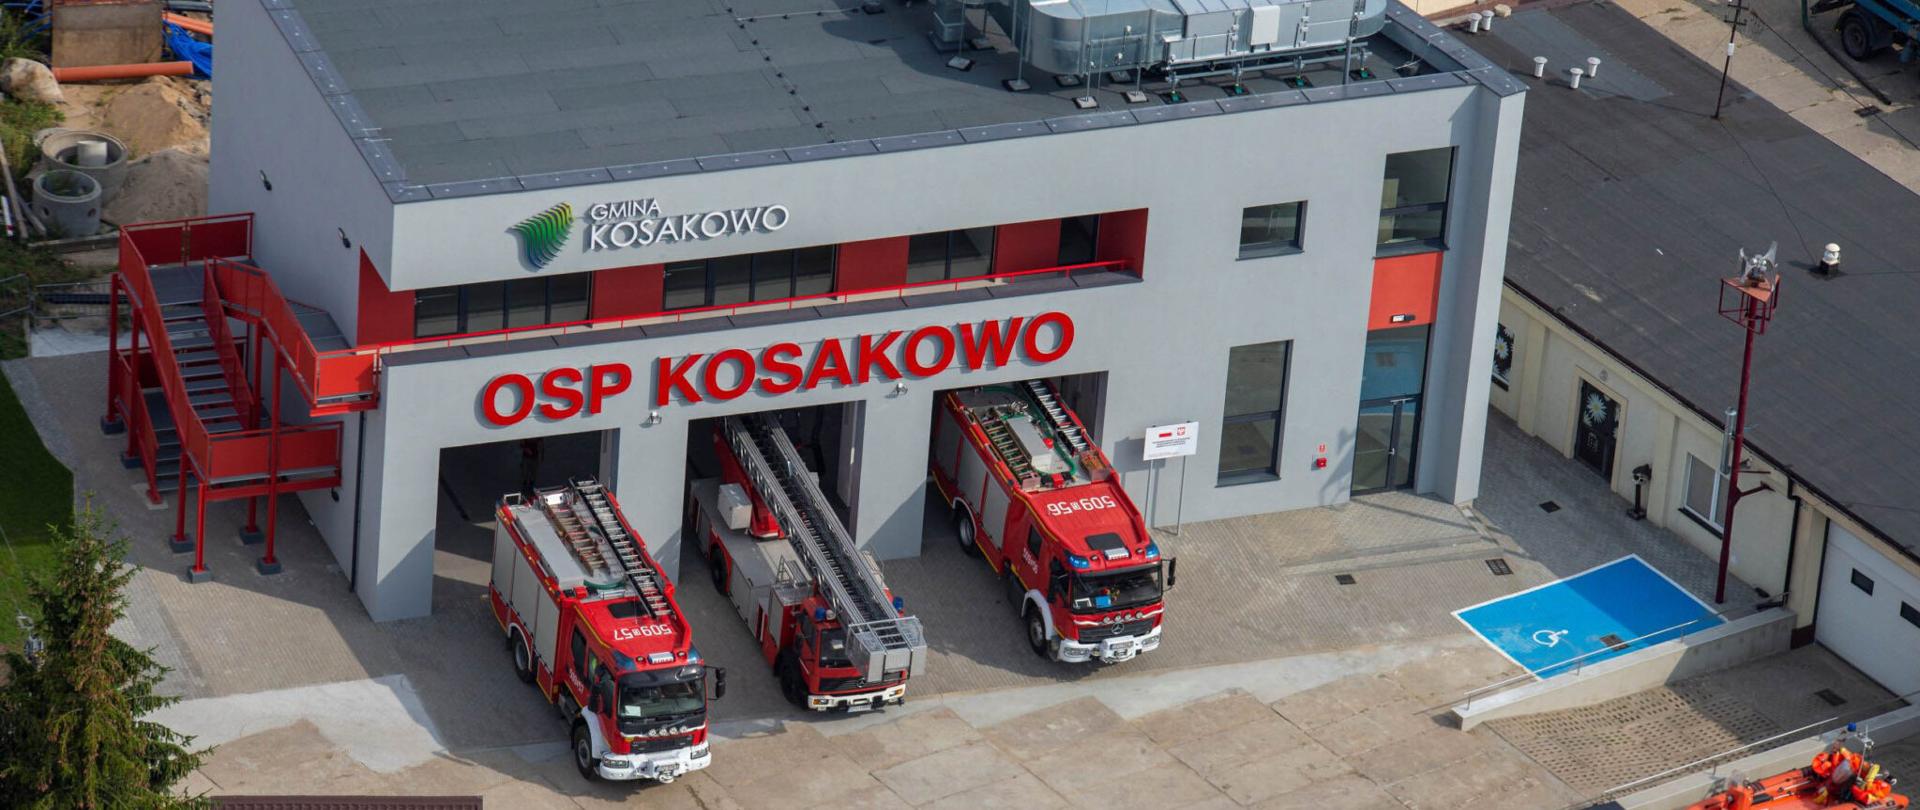 Zdjęcie zrobione z góry, na którym widać nowa strażnicę Ochotniczej Straży Pożarnej Kosakowo. Przed wjazdami stoją trzy samochody strażackie,